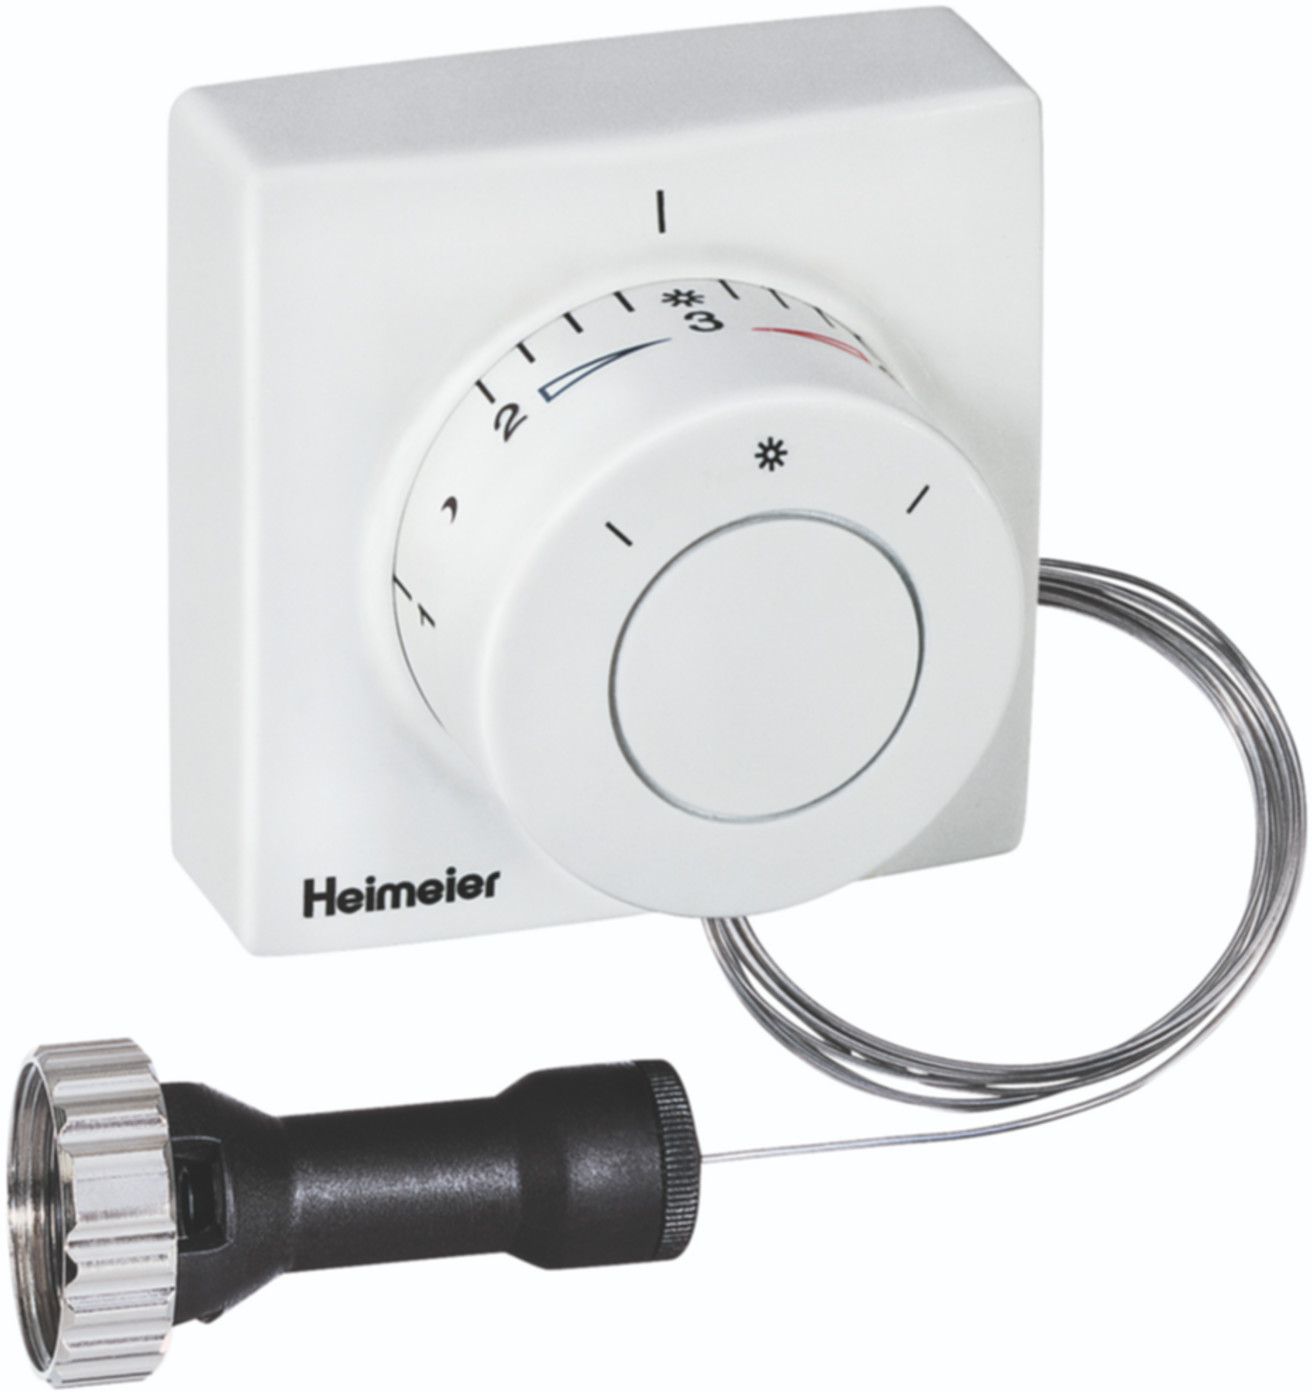 Thermostatkopf F m/Ferneinsteller 5 m 2805-00.500 - Heimeier Programm